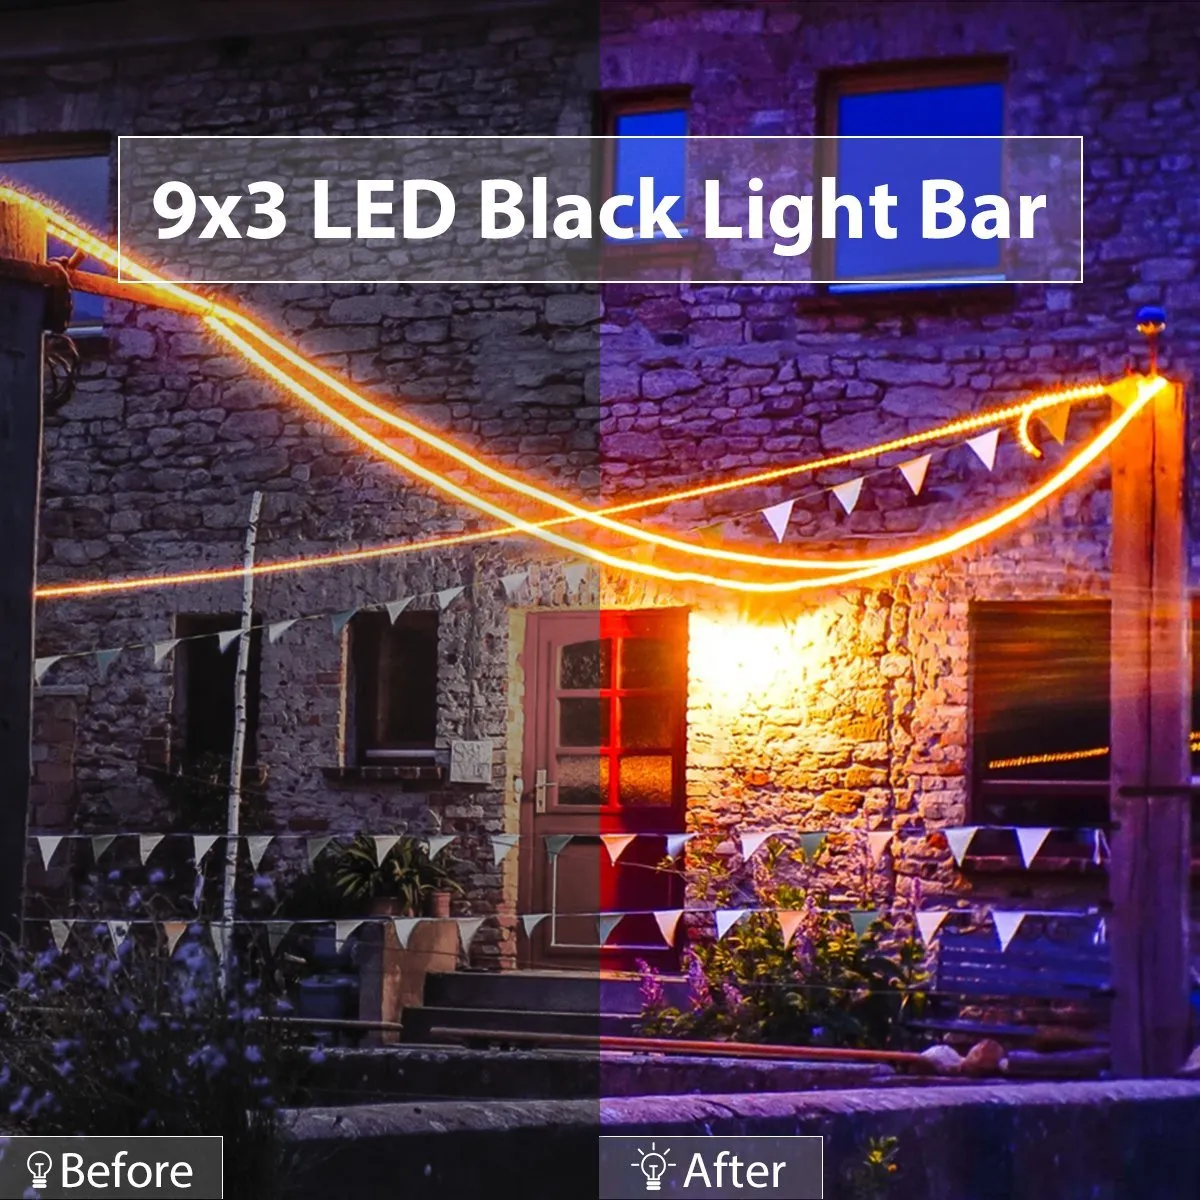 Barre de LED UV OPPS avec boîtier métallique à lumière noire 9LED DJ Party Club Halloween Décoration de la maison289f